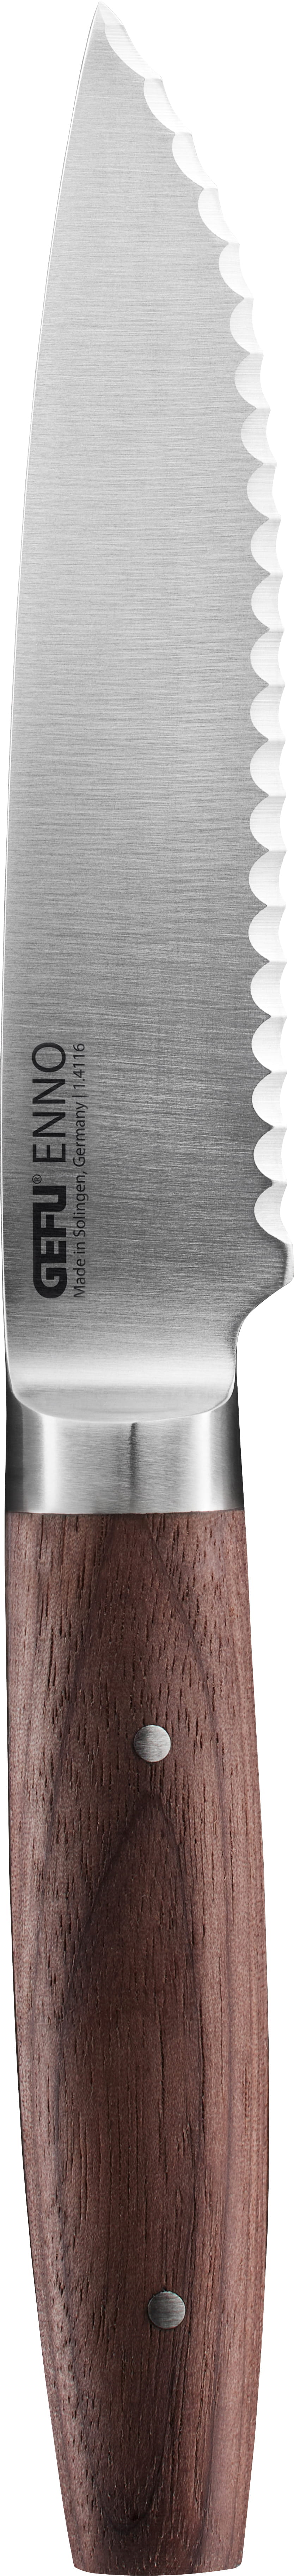 GEFU ENNO Universalmesser, 11,5 cm Wellenschliff